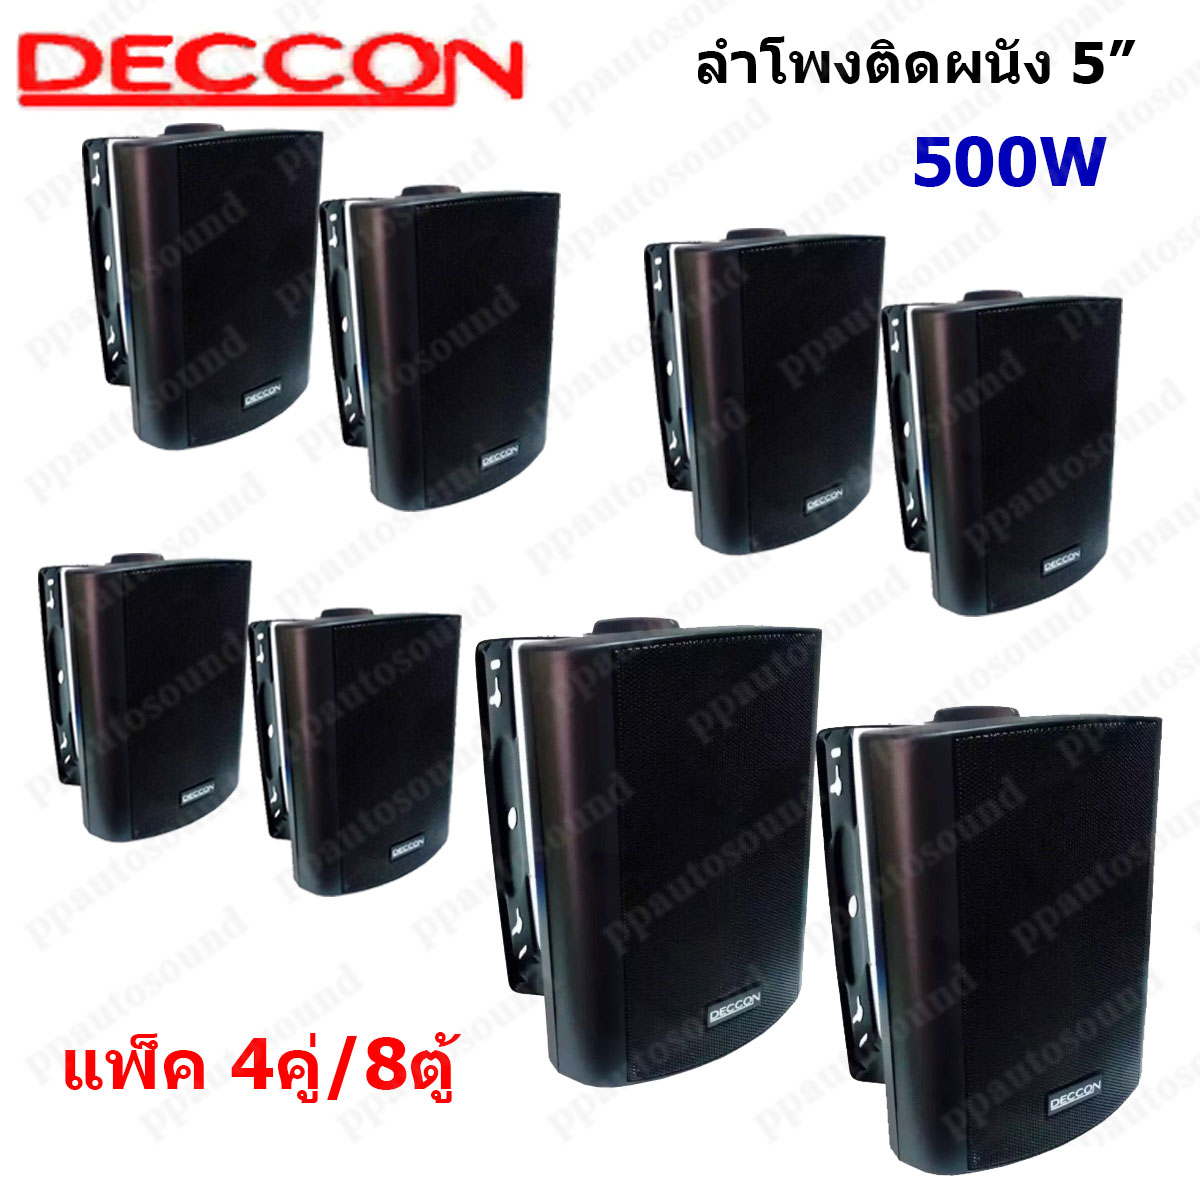 ?✔(ส่งฟรี)DECCON ลำโพงแขวน ตู้ลำโพงพร้อมขาติดผนัง 5 นิ้ว 500วัตต์ รุ่น SOON-5 (Black) (แพ็ค1-6คู่)